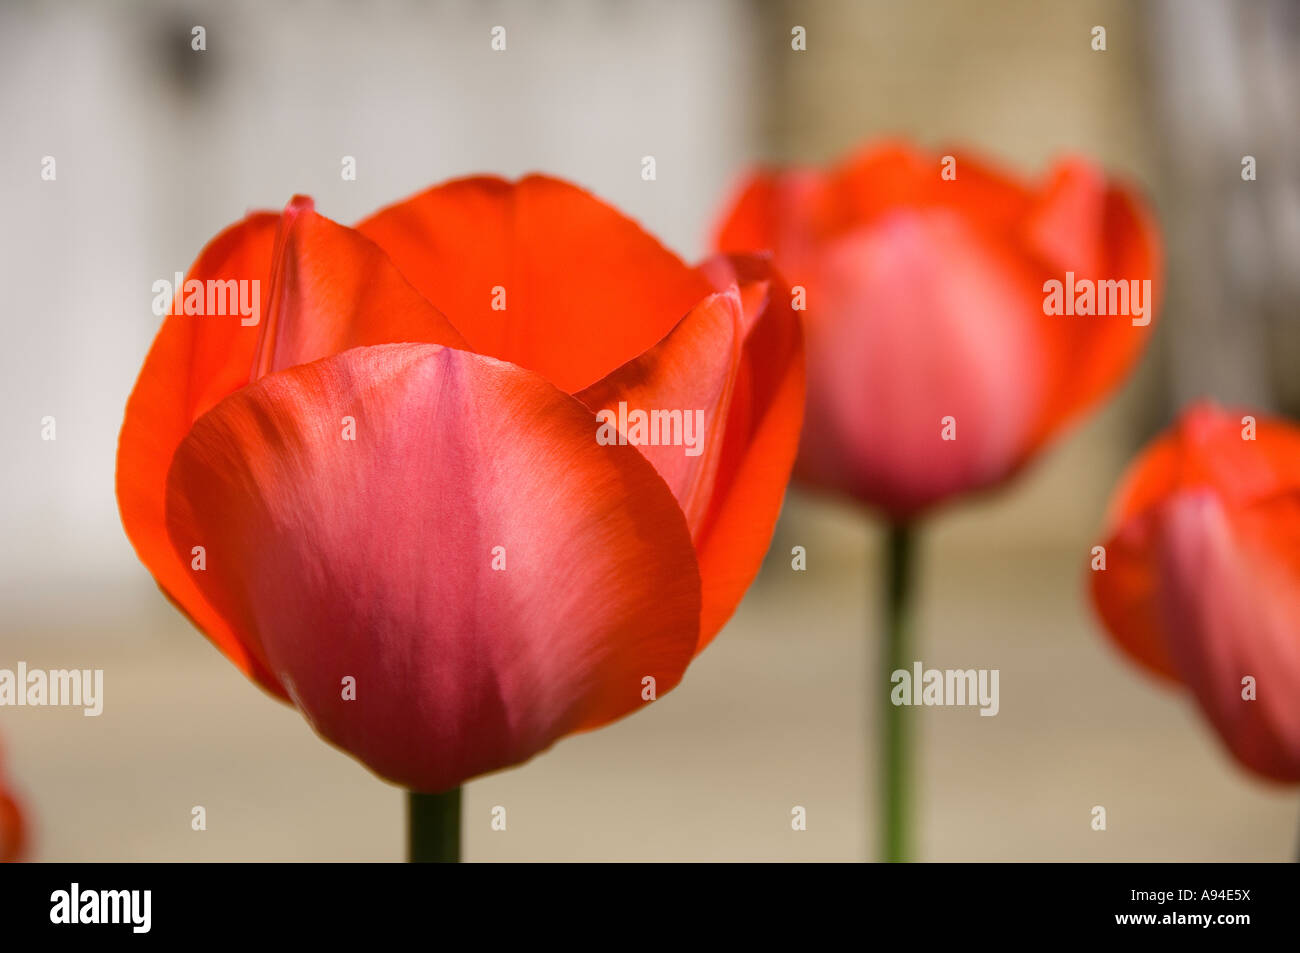 Gros plan de tulipes rouges tulipes fleurs fleur floraison croissance au printemps Angleterre Royaume-Uni Grande-Bretagne Banque D'Images